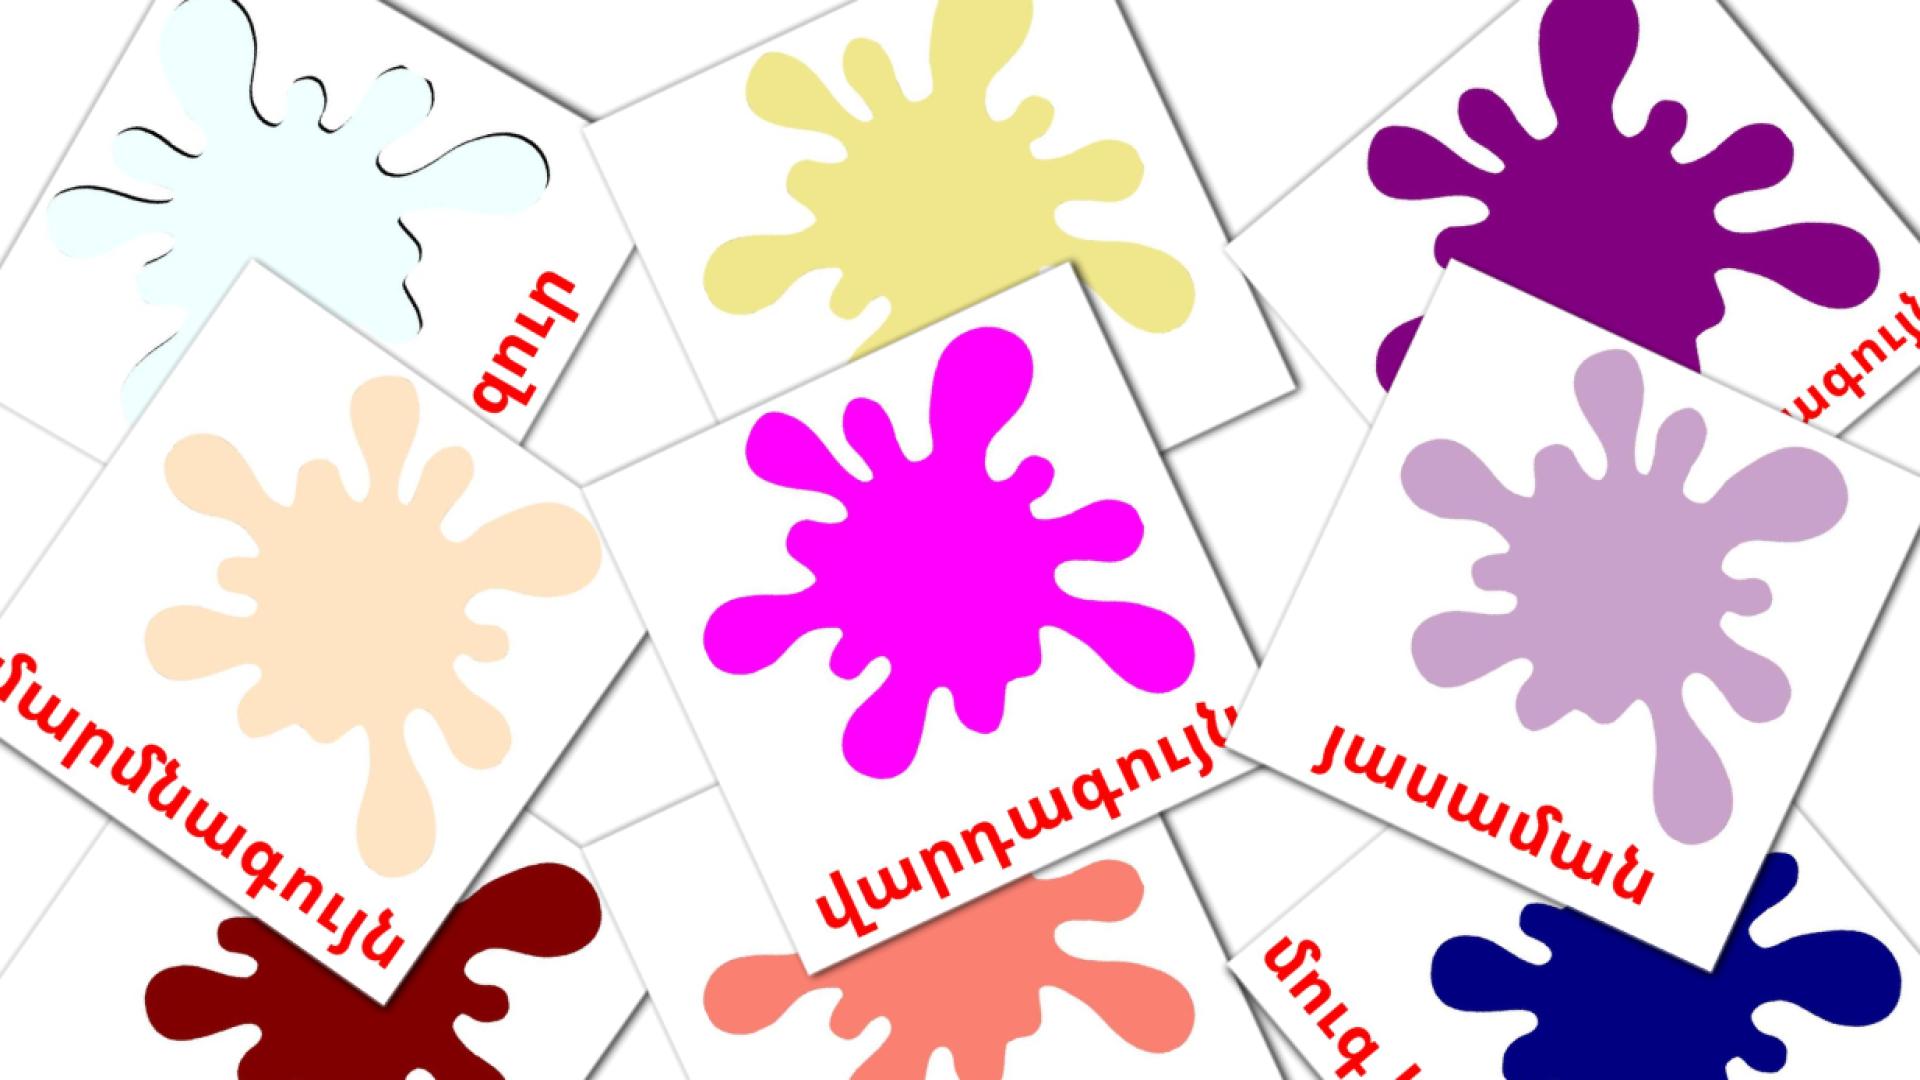 Secundaire kleuren - armeensee woordenschatkaarten